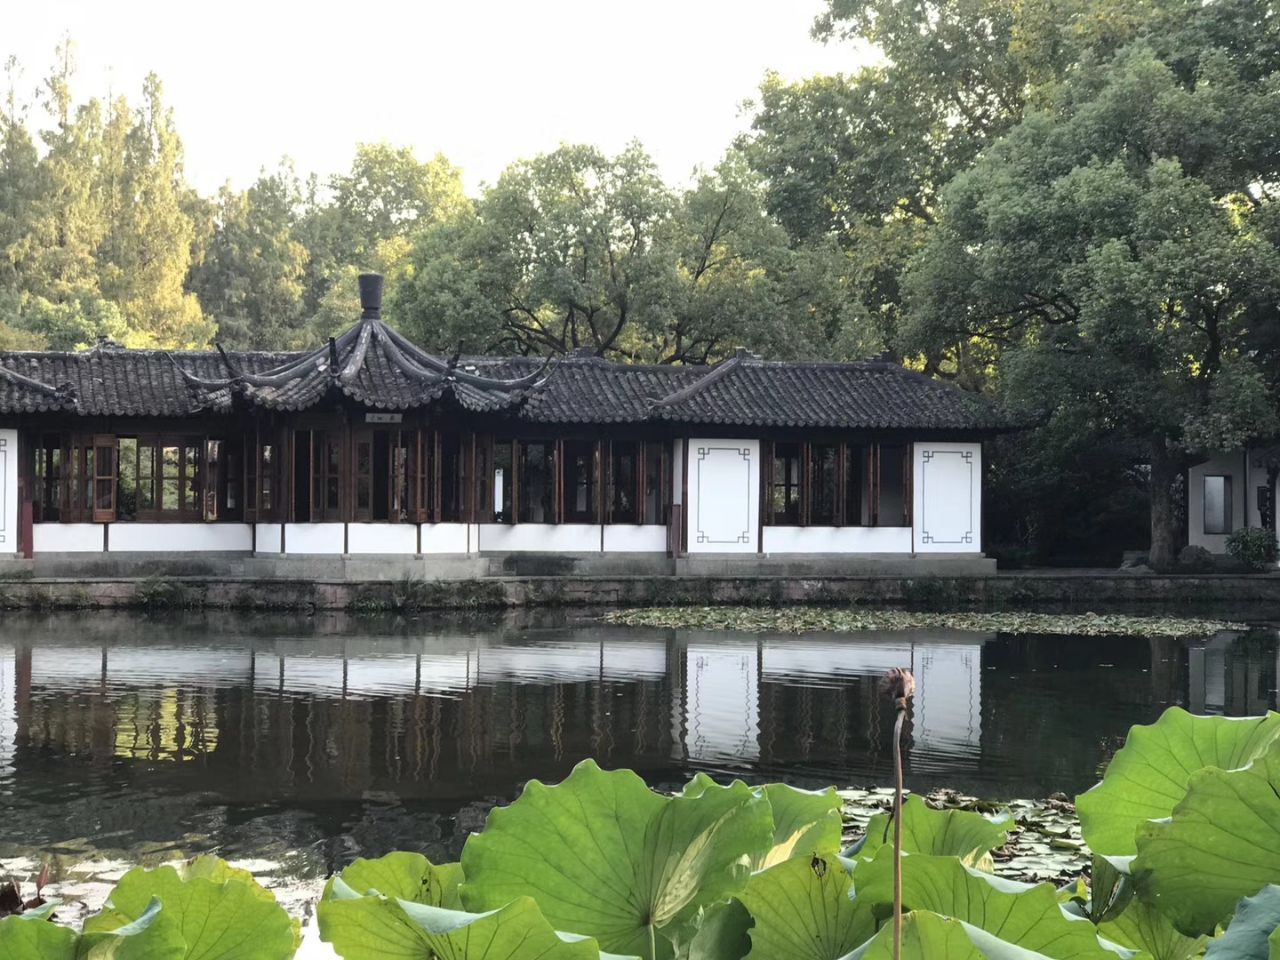 【携程攻略】杭州郭庄景点,郭庄，是杭州西湖之上一座最具有江南园林建筑艺术特色的私家花园。从…